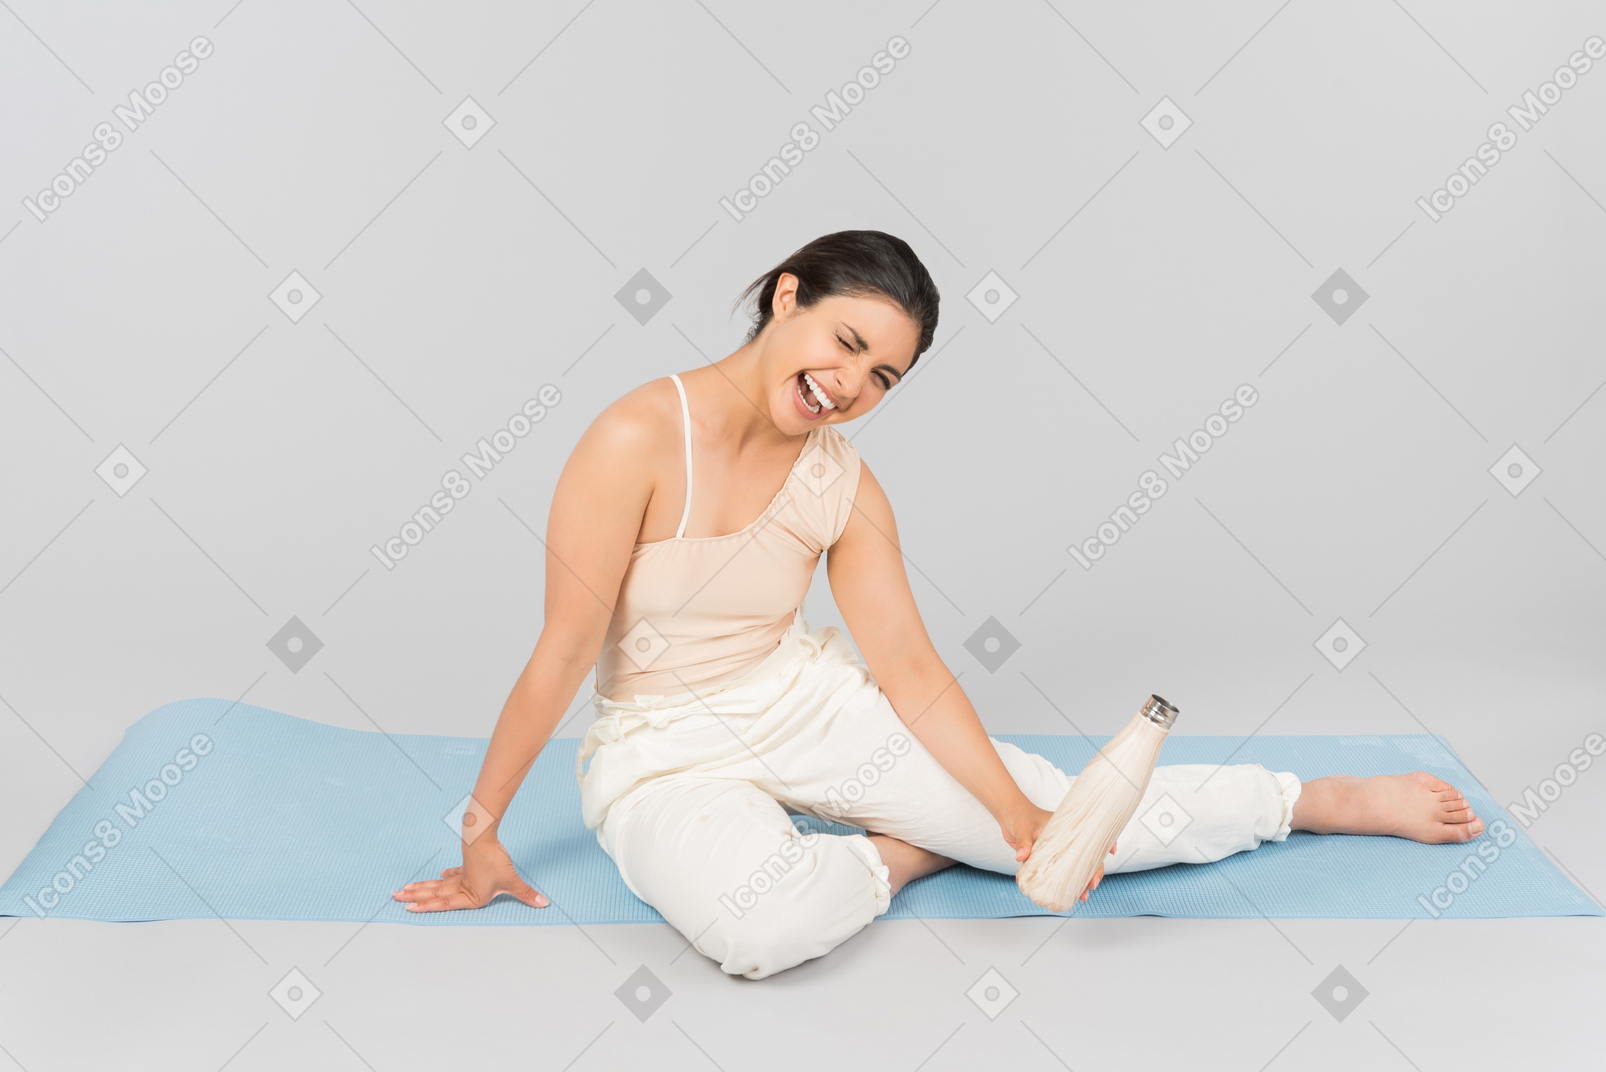 Lachende junge indische frau, die auf yogamatte sitzt und sportflasche hält